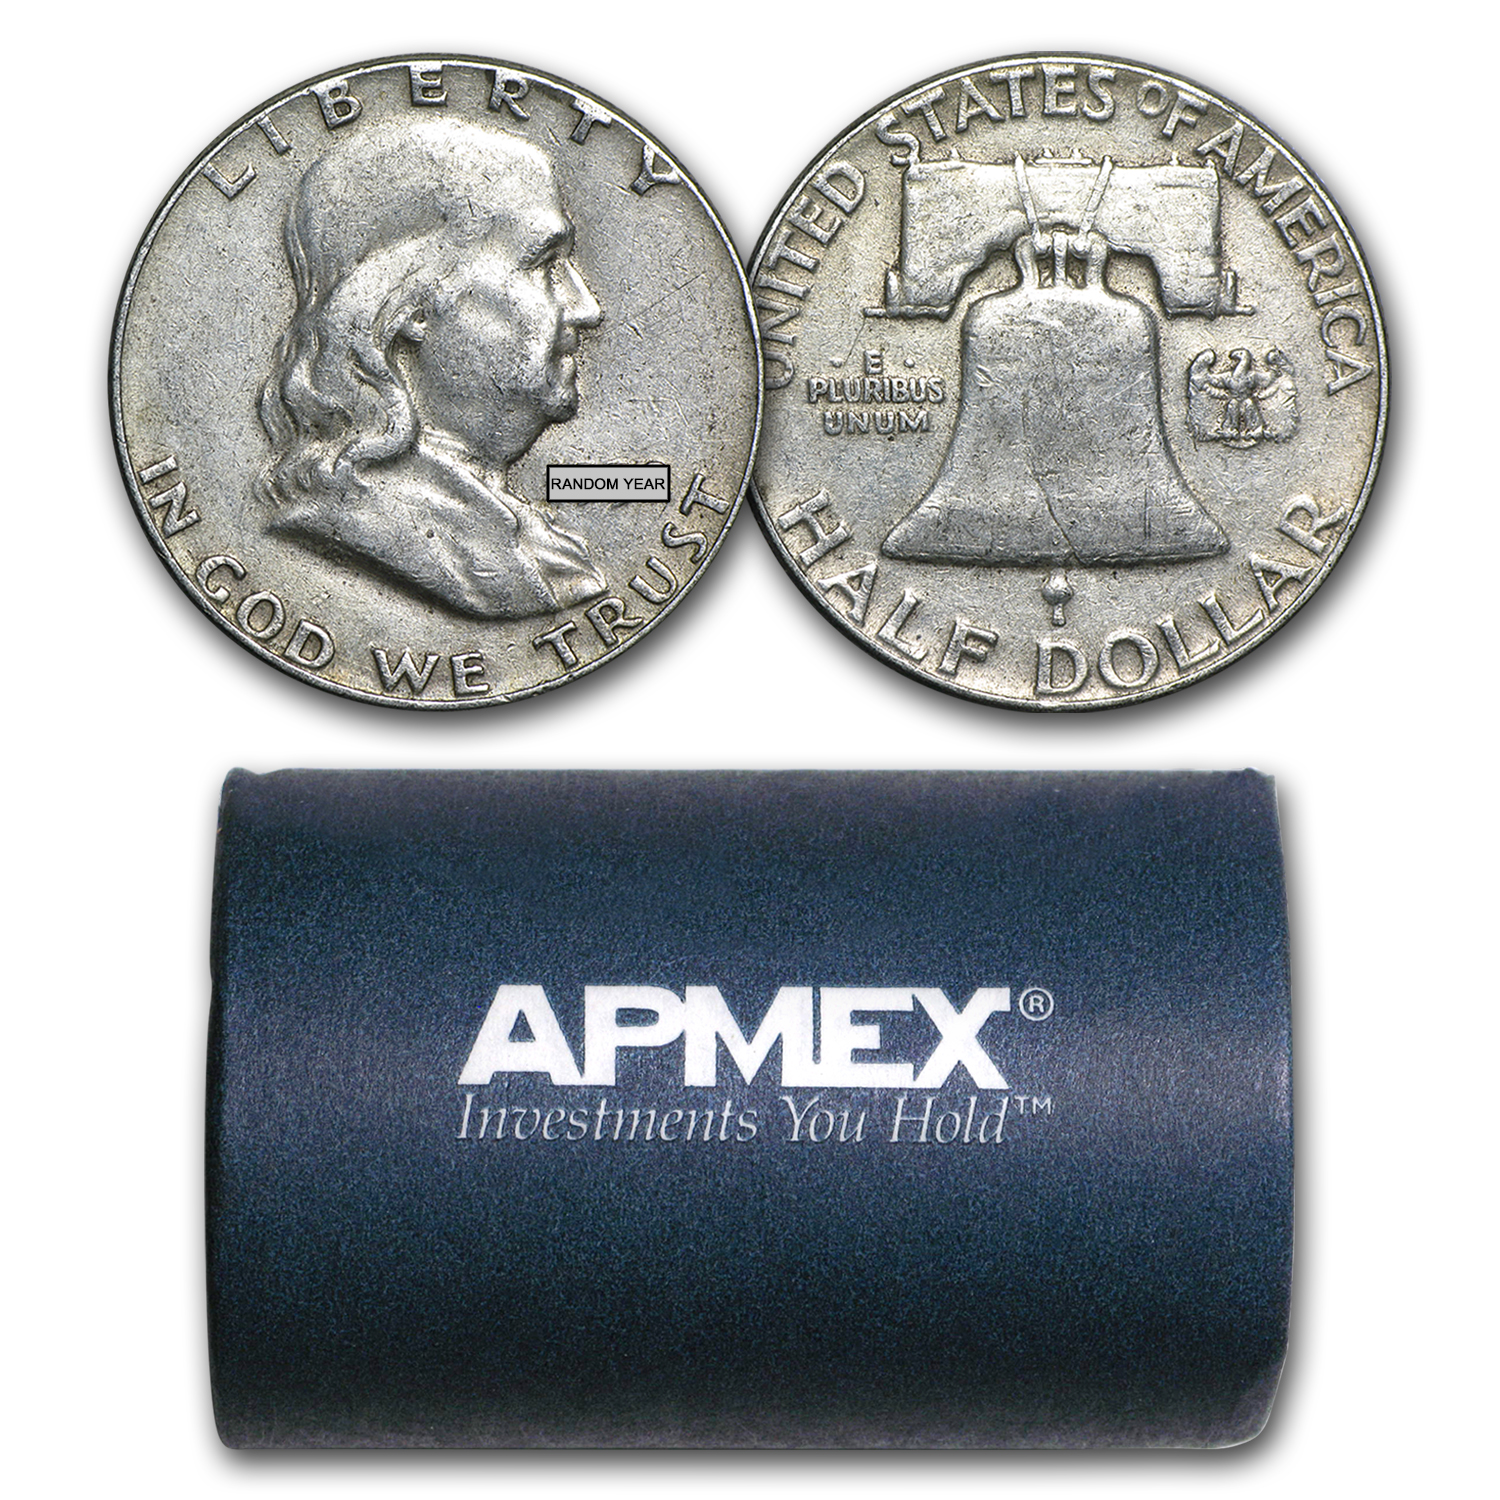 MAKE OFFER $2.00 Face Value Ben Franklin Half Dollars Halves Junk Silver Coins 